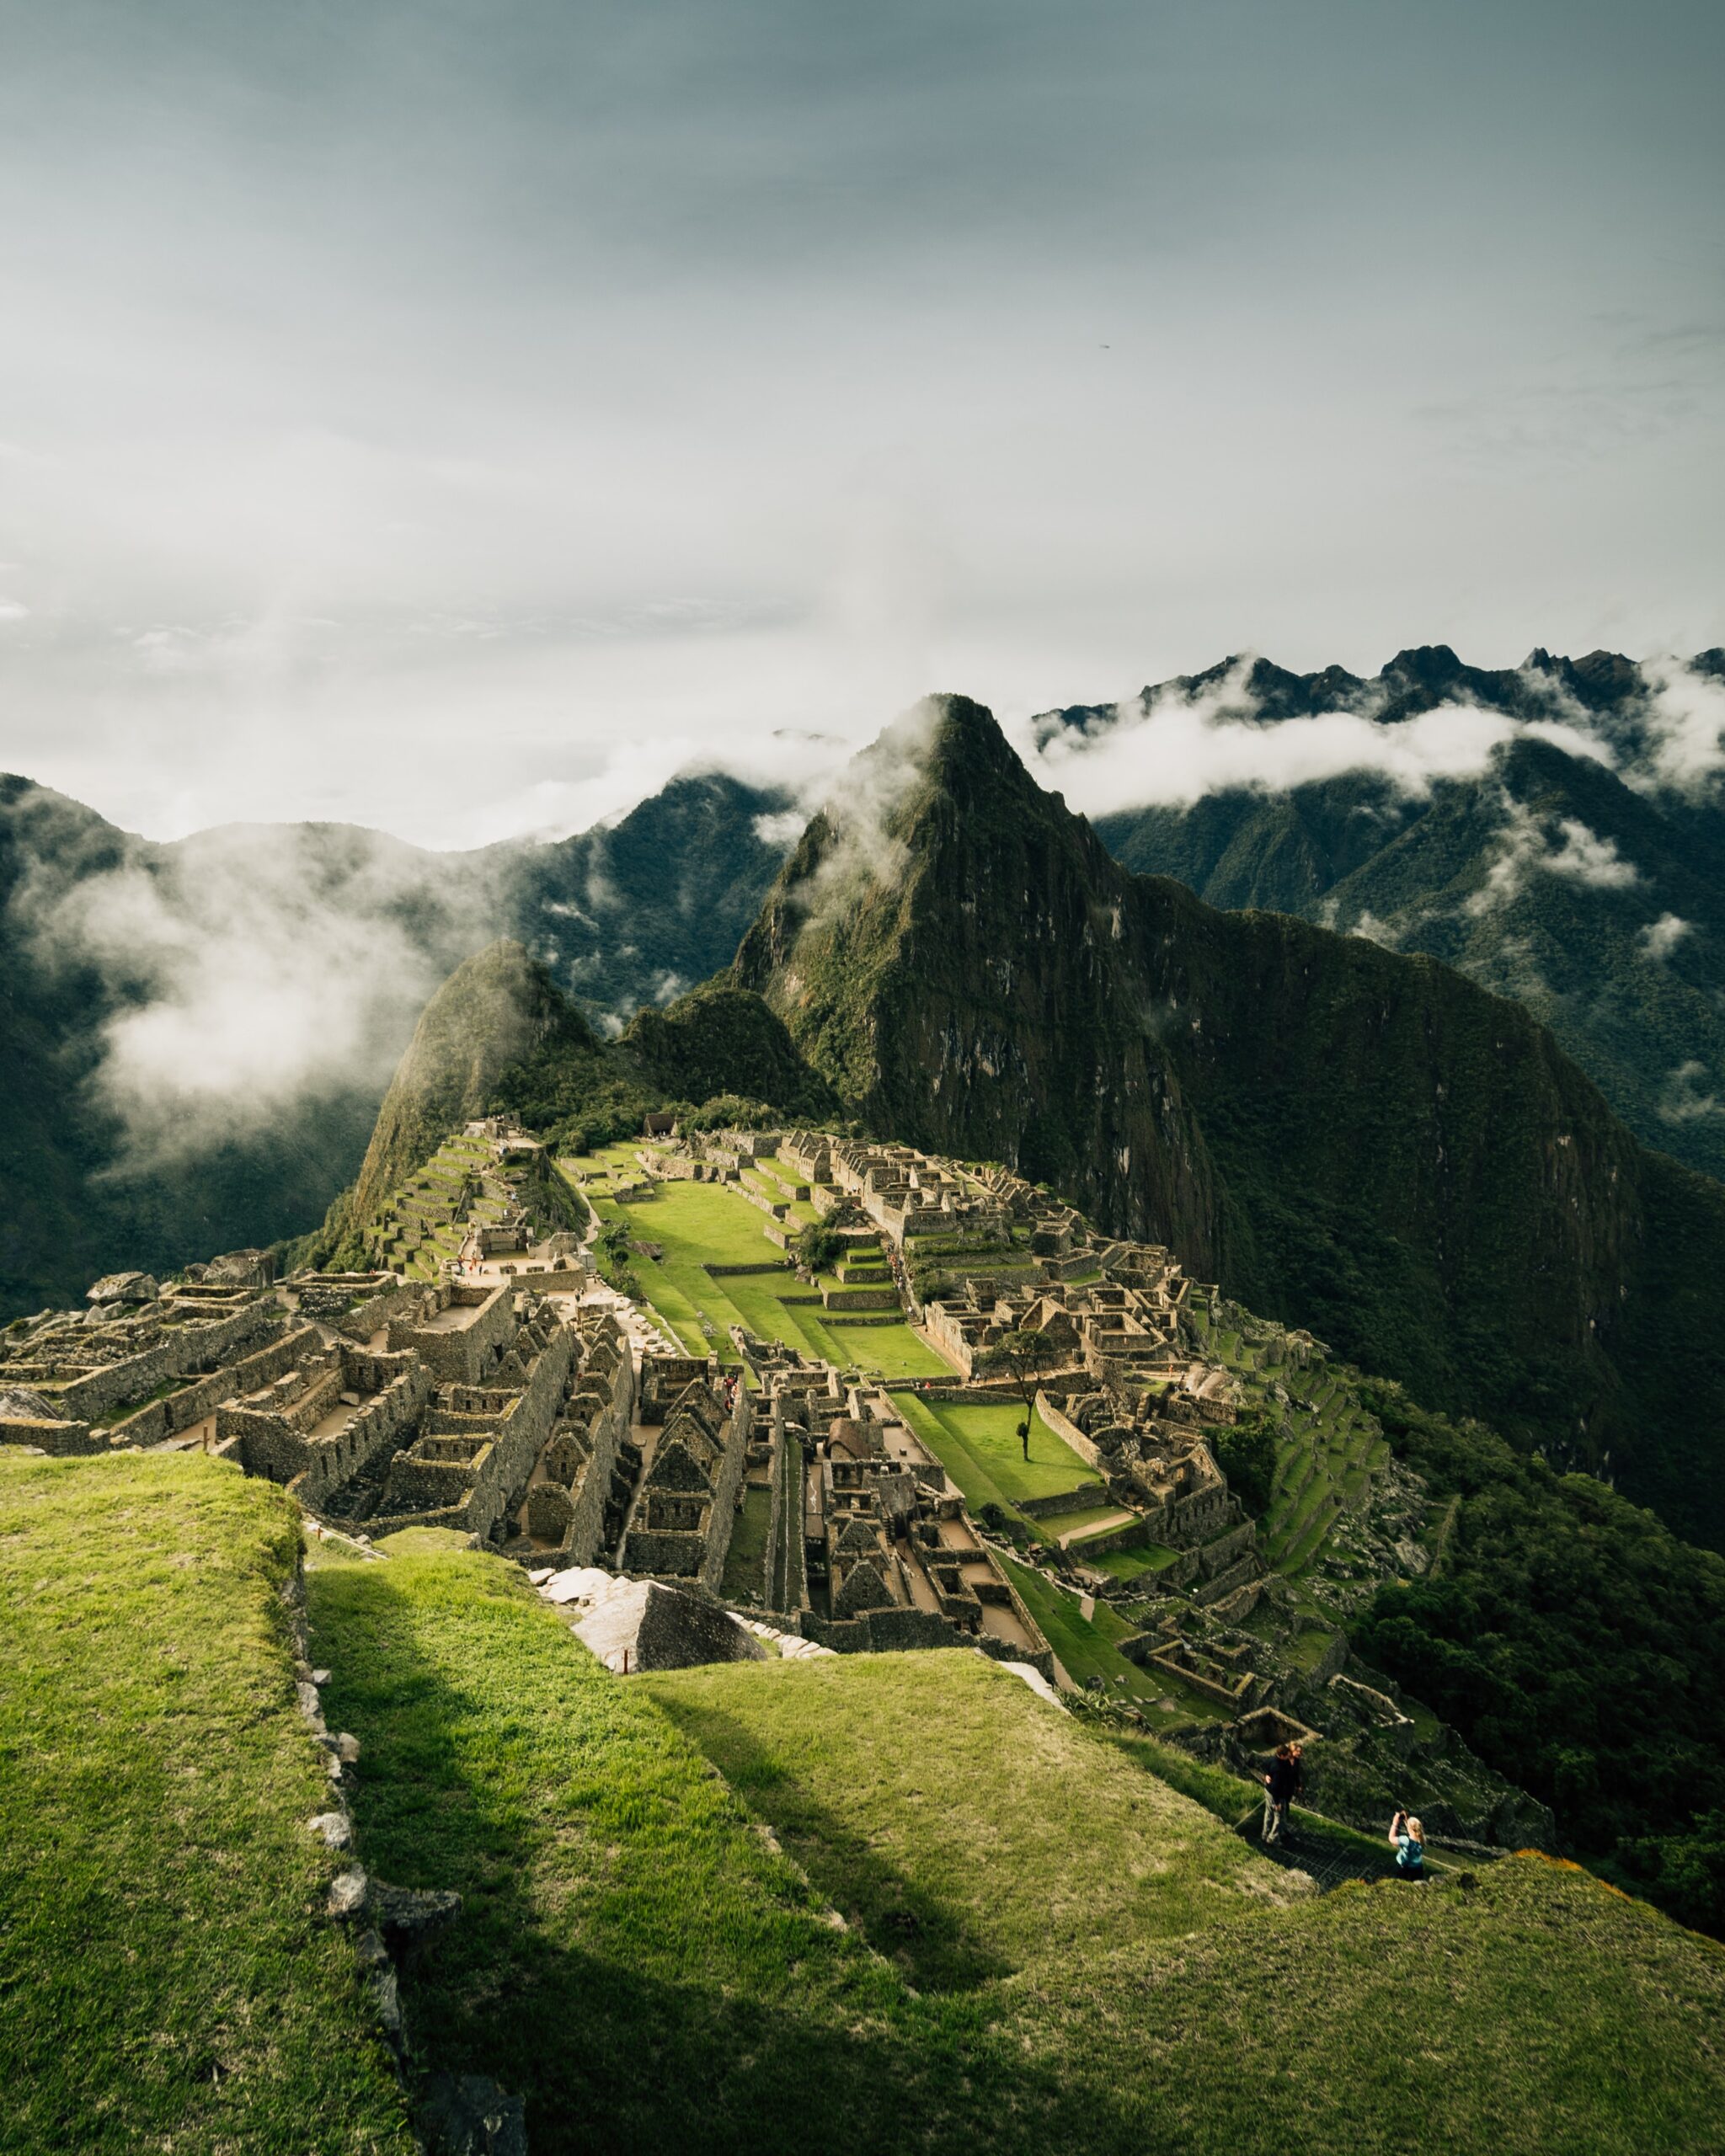 Visit Inca trails and Machu Picchu UNESCO world heritage site in Peru